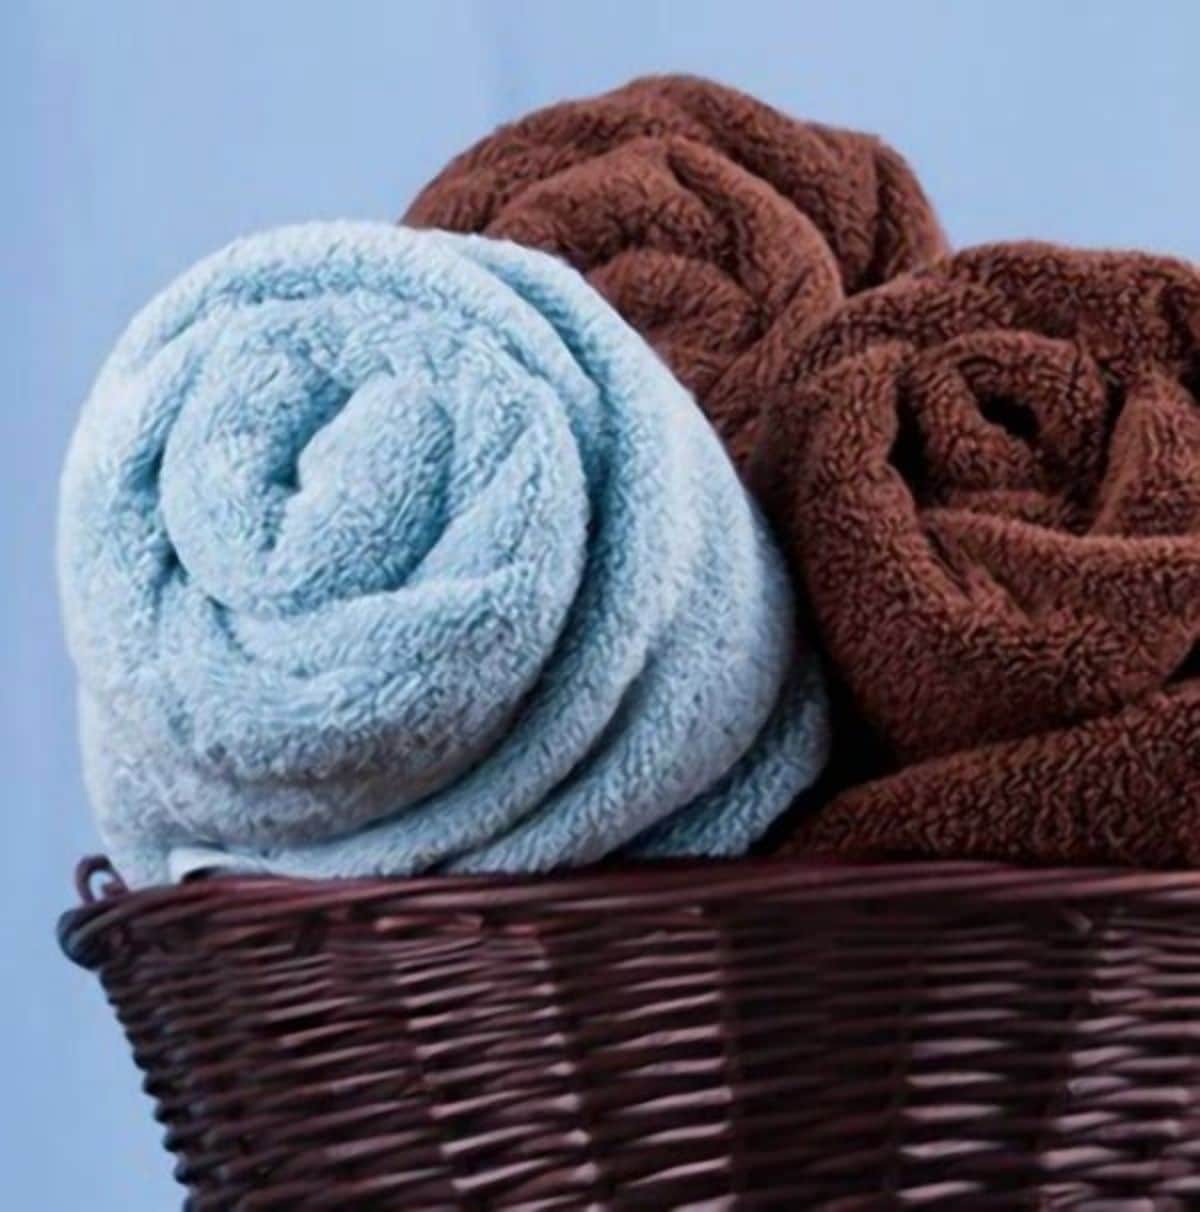 Storing Bath Towels